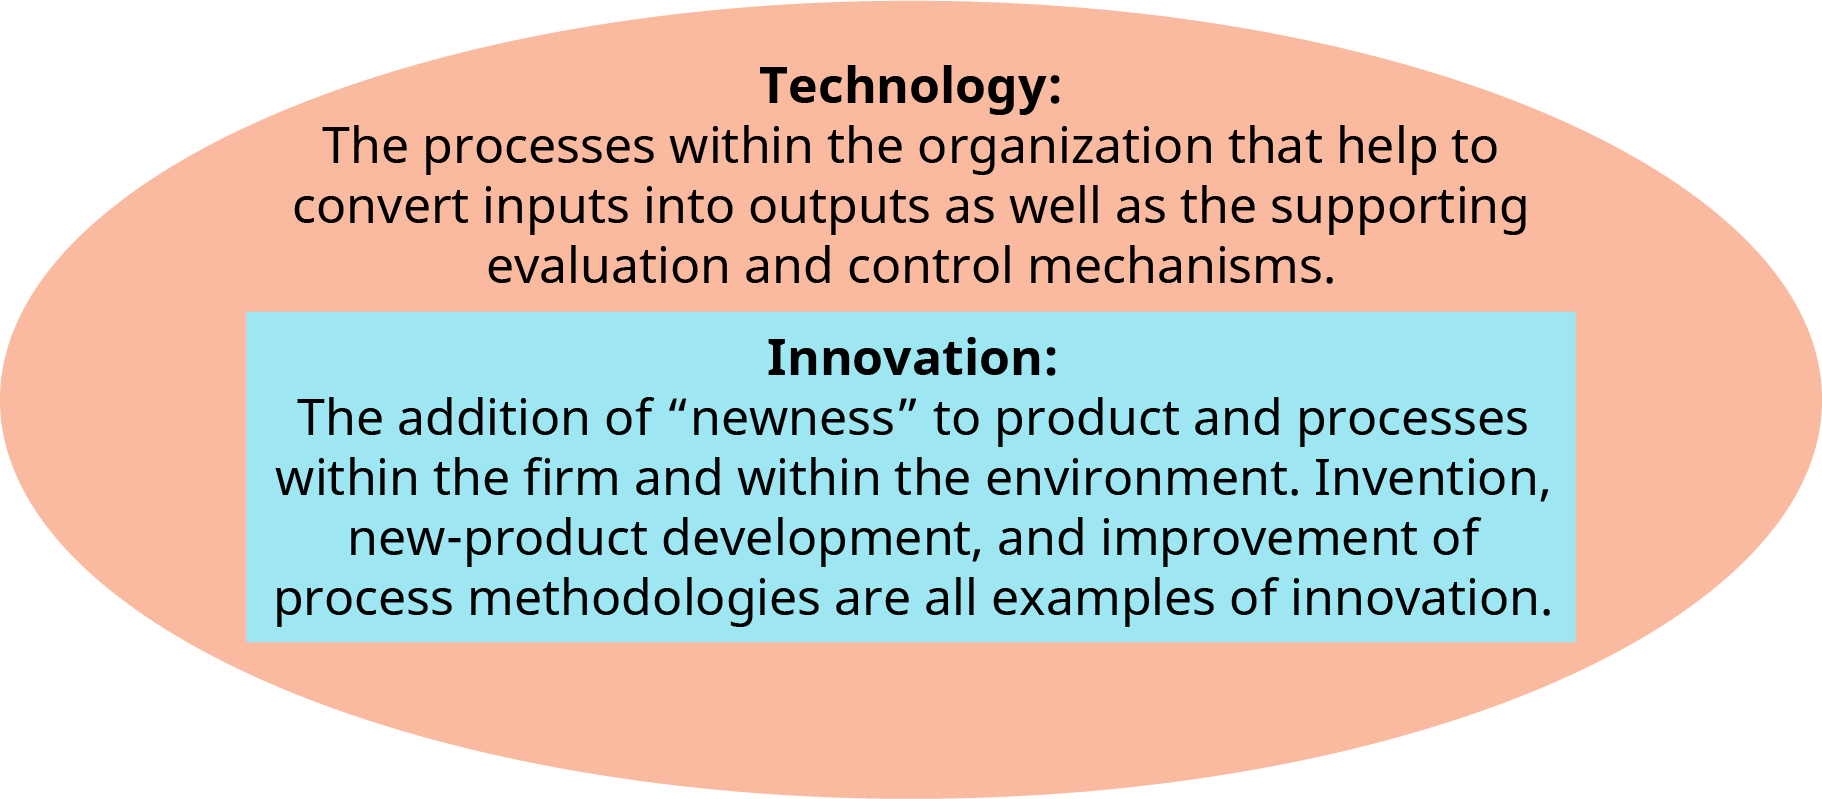 Uma ilustração mostra as definições dos termos “Tecnologia” e “Inovação” sobrepostas dentro de um oval.